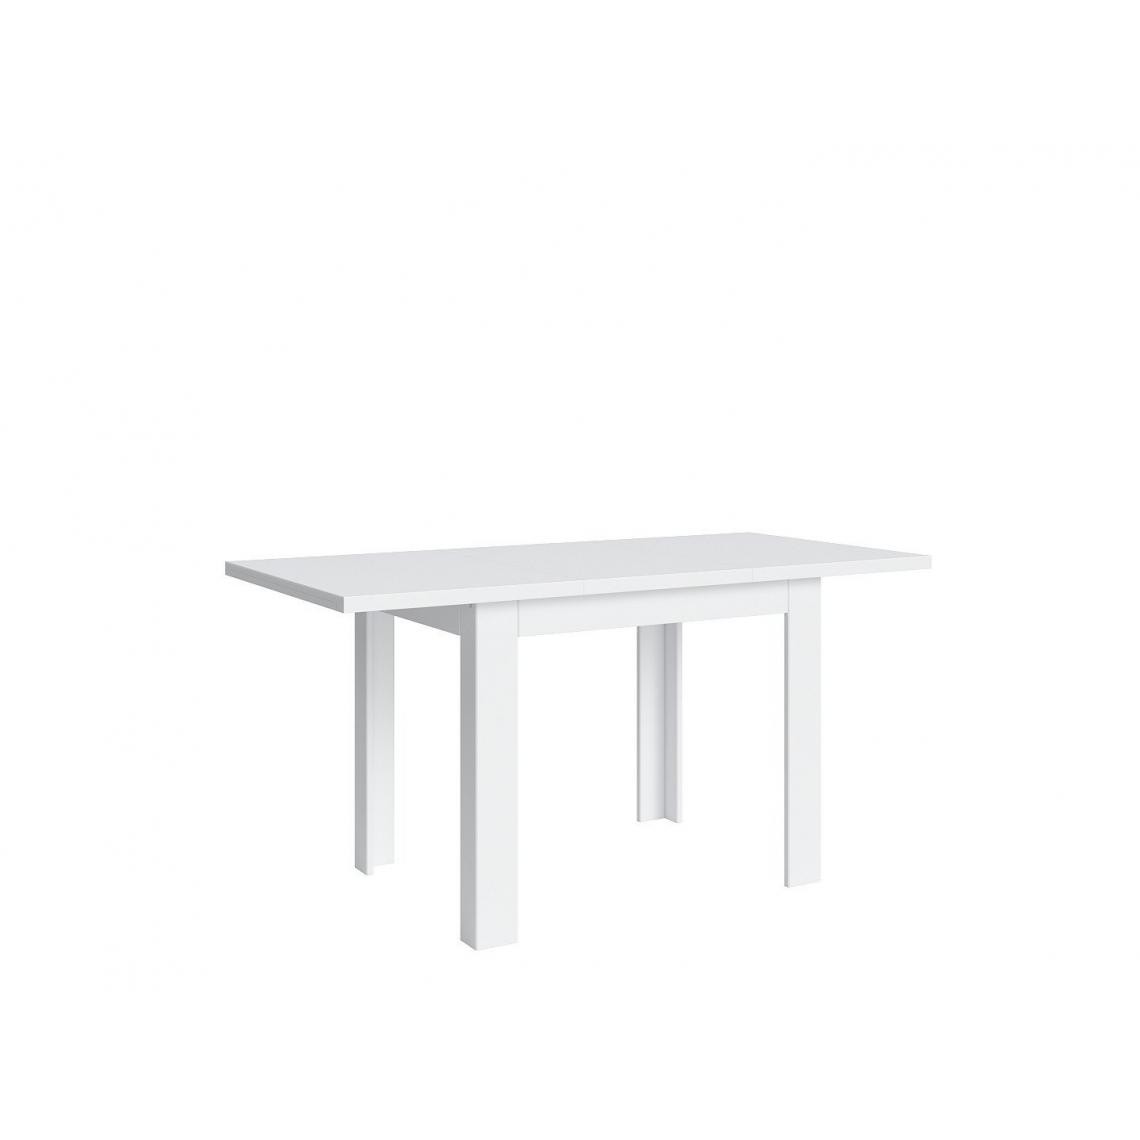 Hucoco - ANTAREL - Table rectangulaire extensible salon cuisine salle à manger - Style scandinave - 110-155x77x75 cm - Blanc - Tables à manger